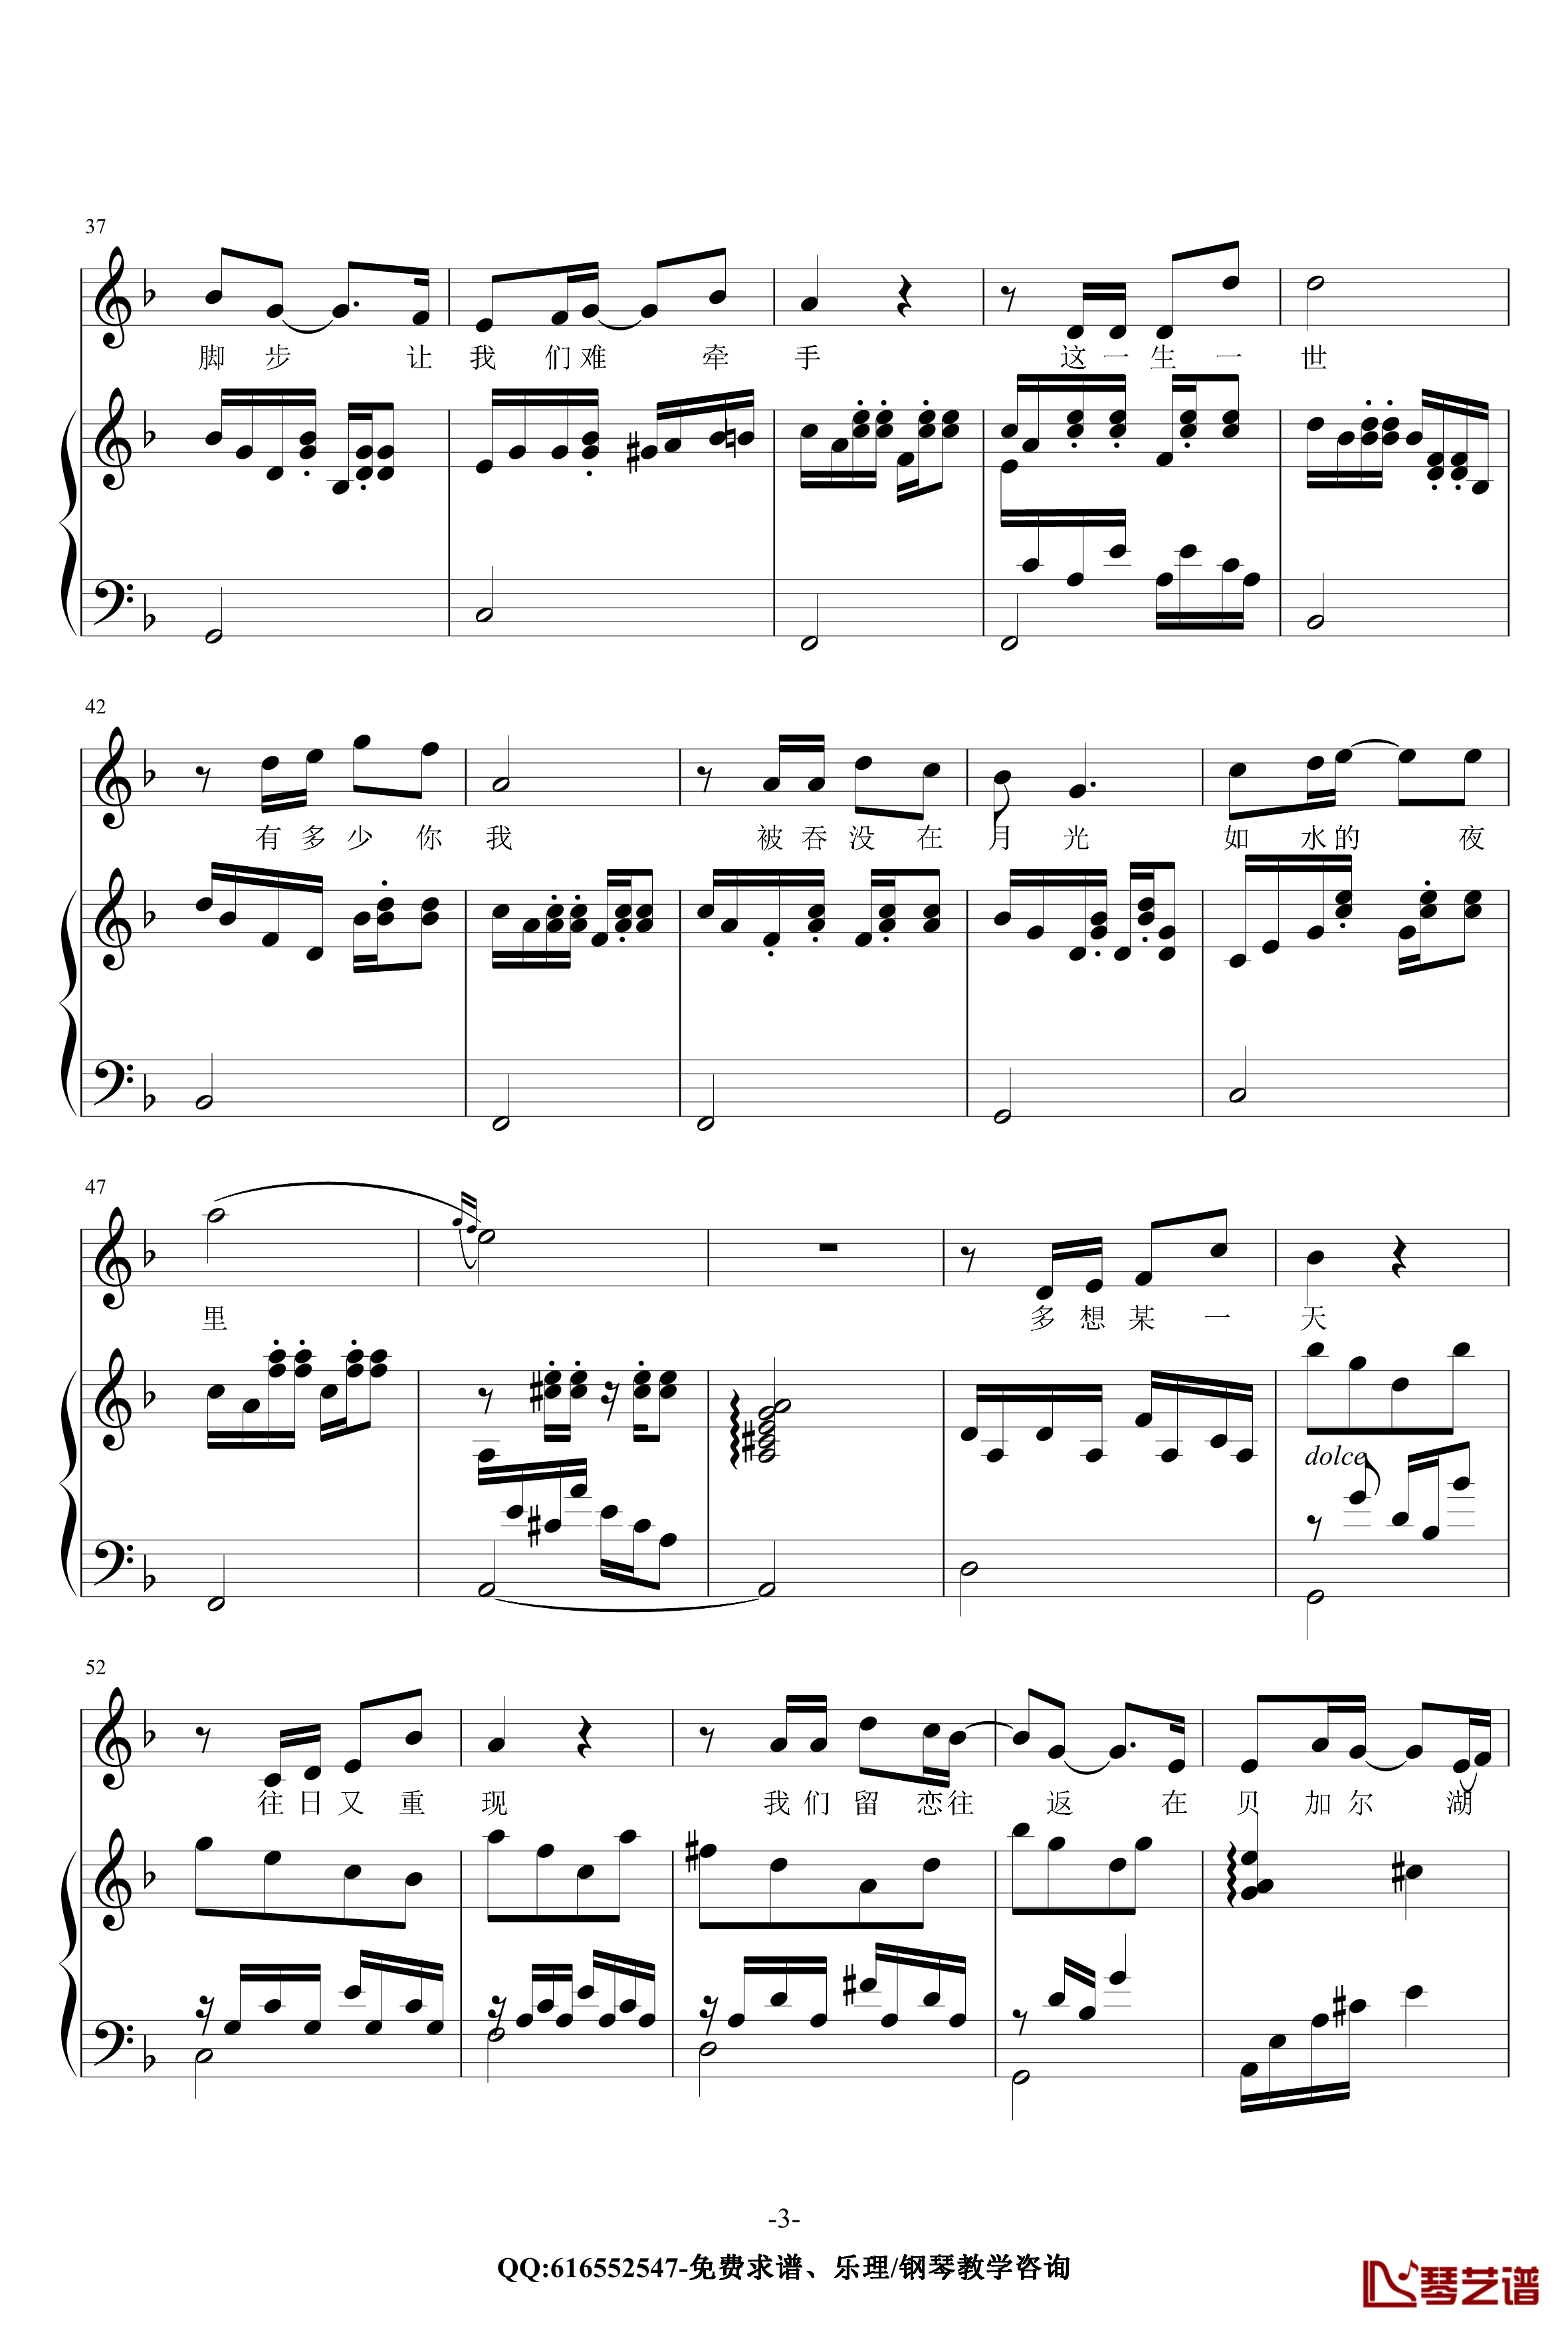 贝加尔湖畔钢琴谱-金龙鱼原声伴奏版170616-李健3